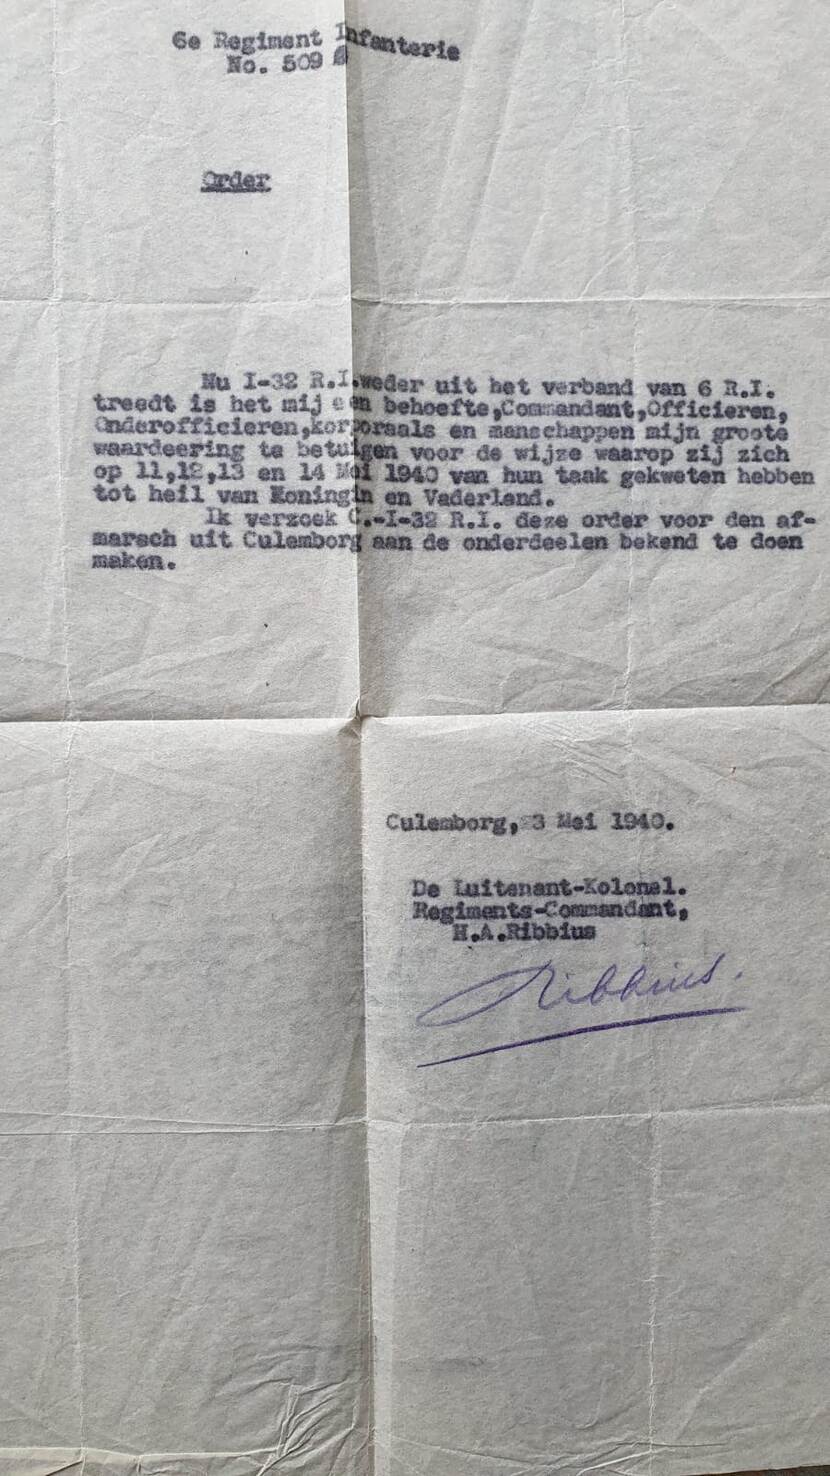 Order waarin regimentscommandant zijn waardering uitspreekt aan de eenheid van Thulais overgrootvader voor hun optreden tijdens de Meidagen 1940.